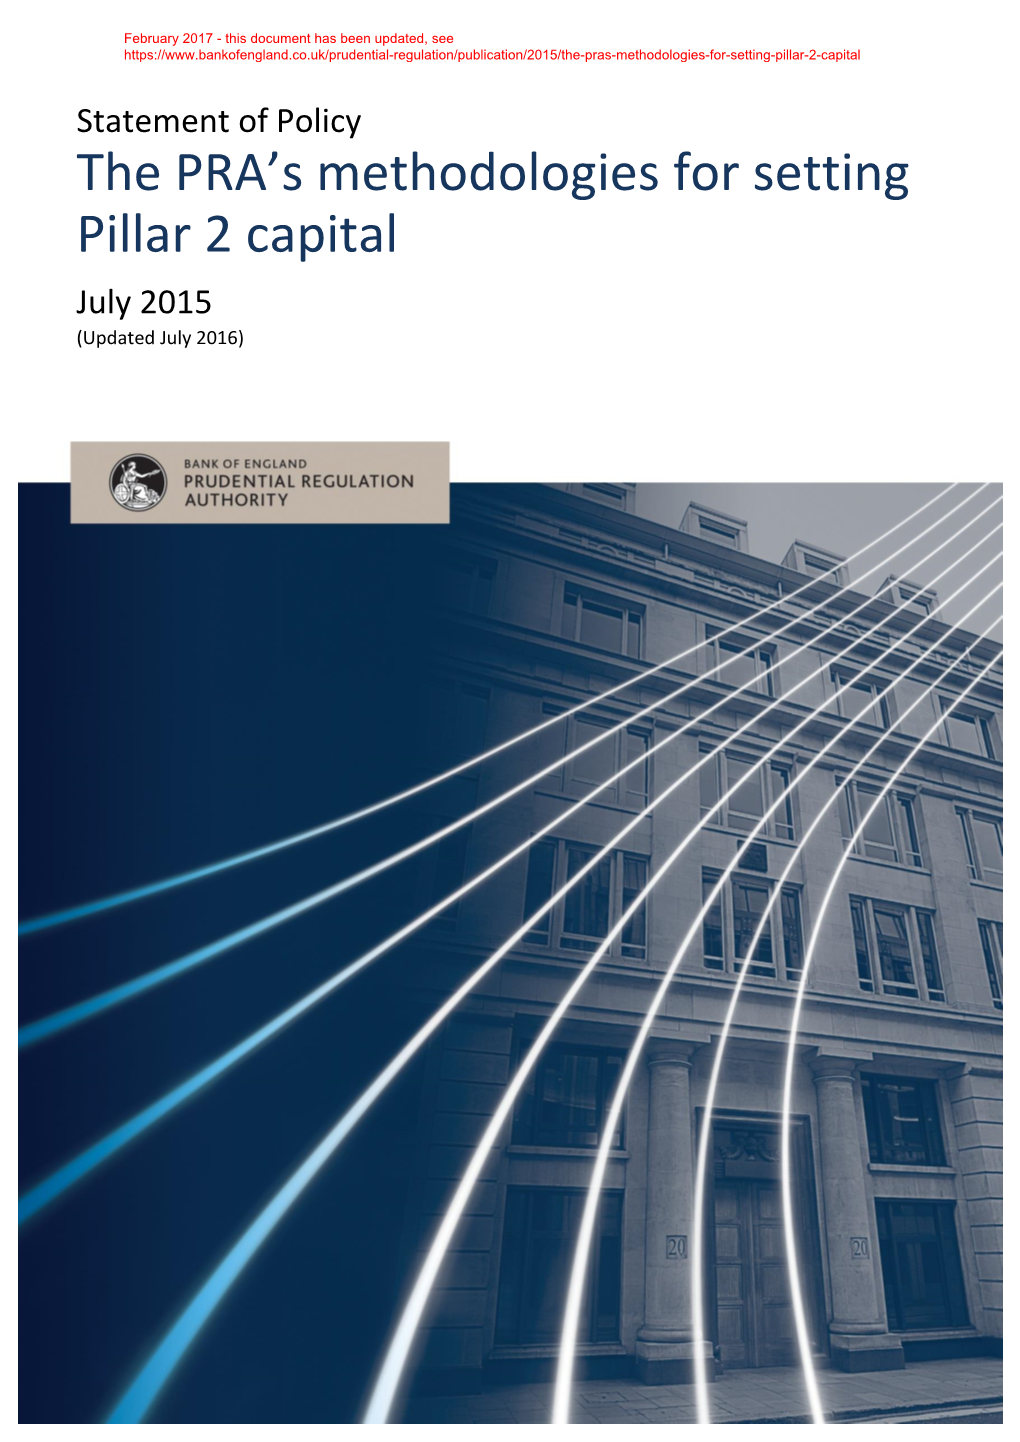 The PRA's Methodologies for Setting Pillar 2 Capital